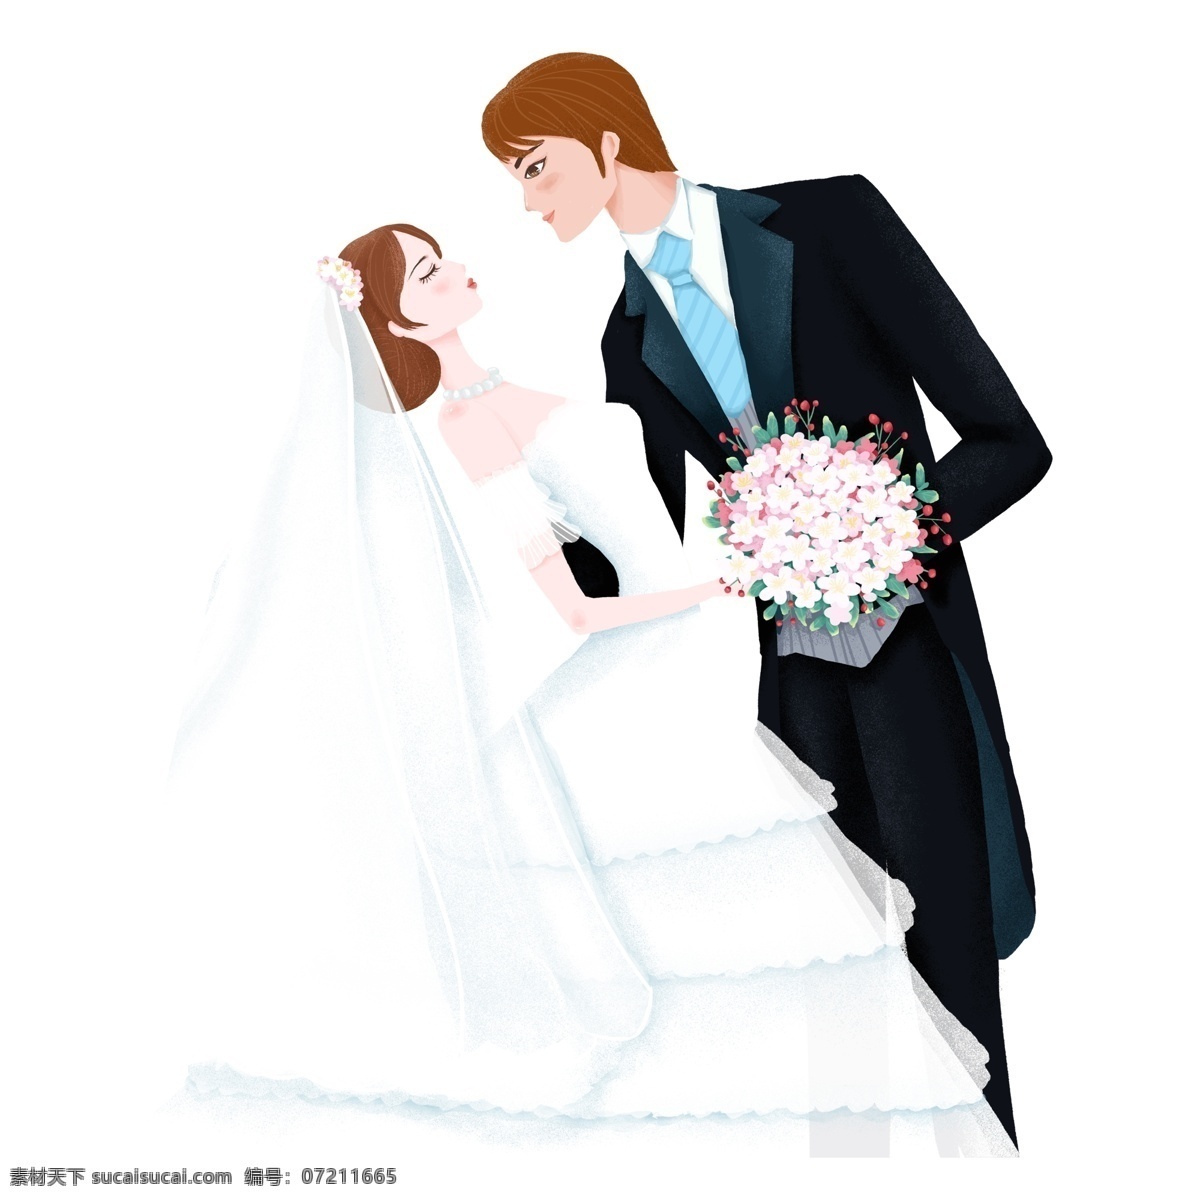 新娘 新郎 人物 装饰 结婚元素 浪漫 免扣素材 婚礼装饰素材